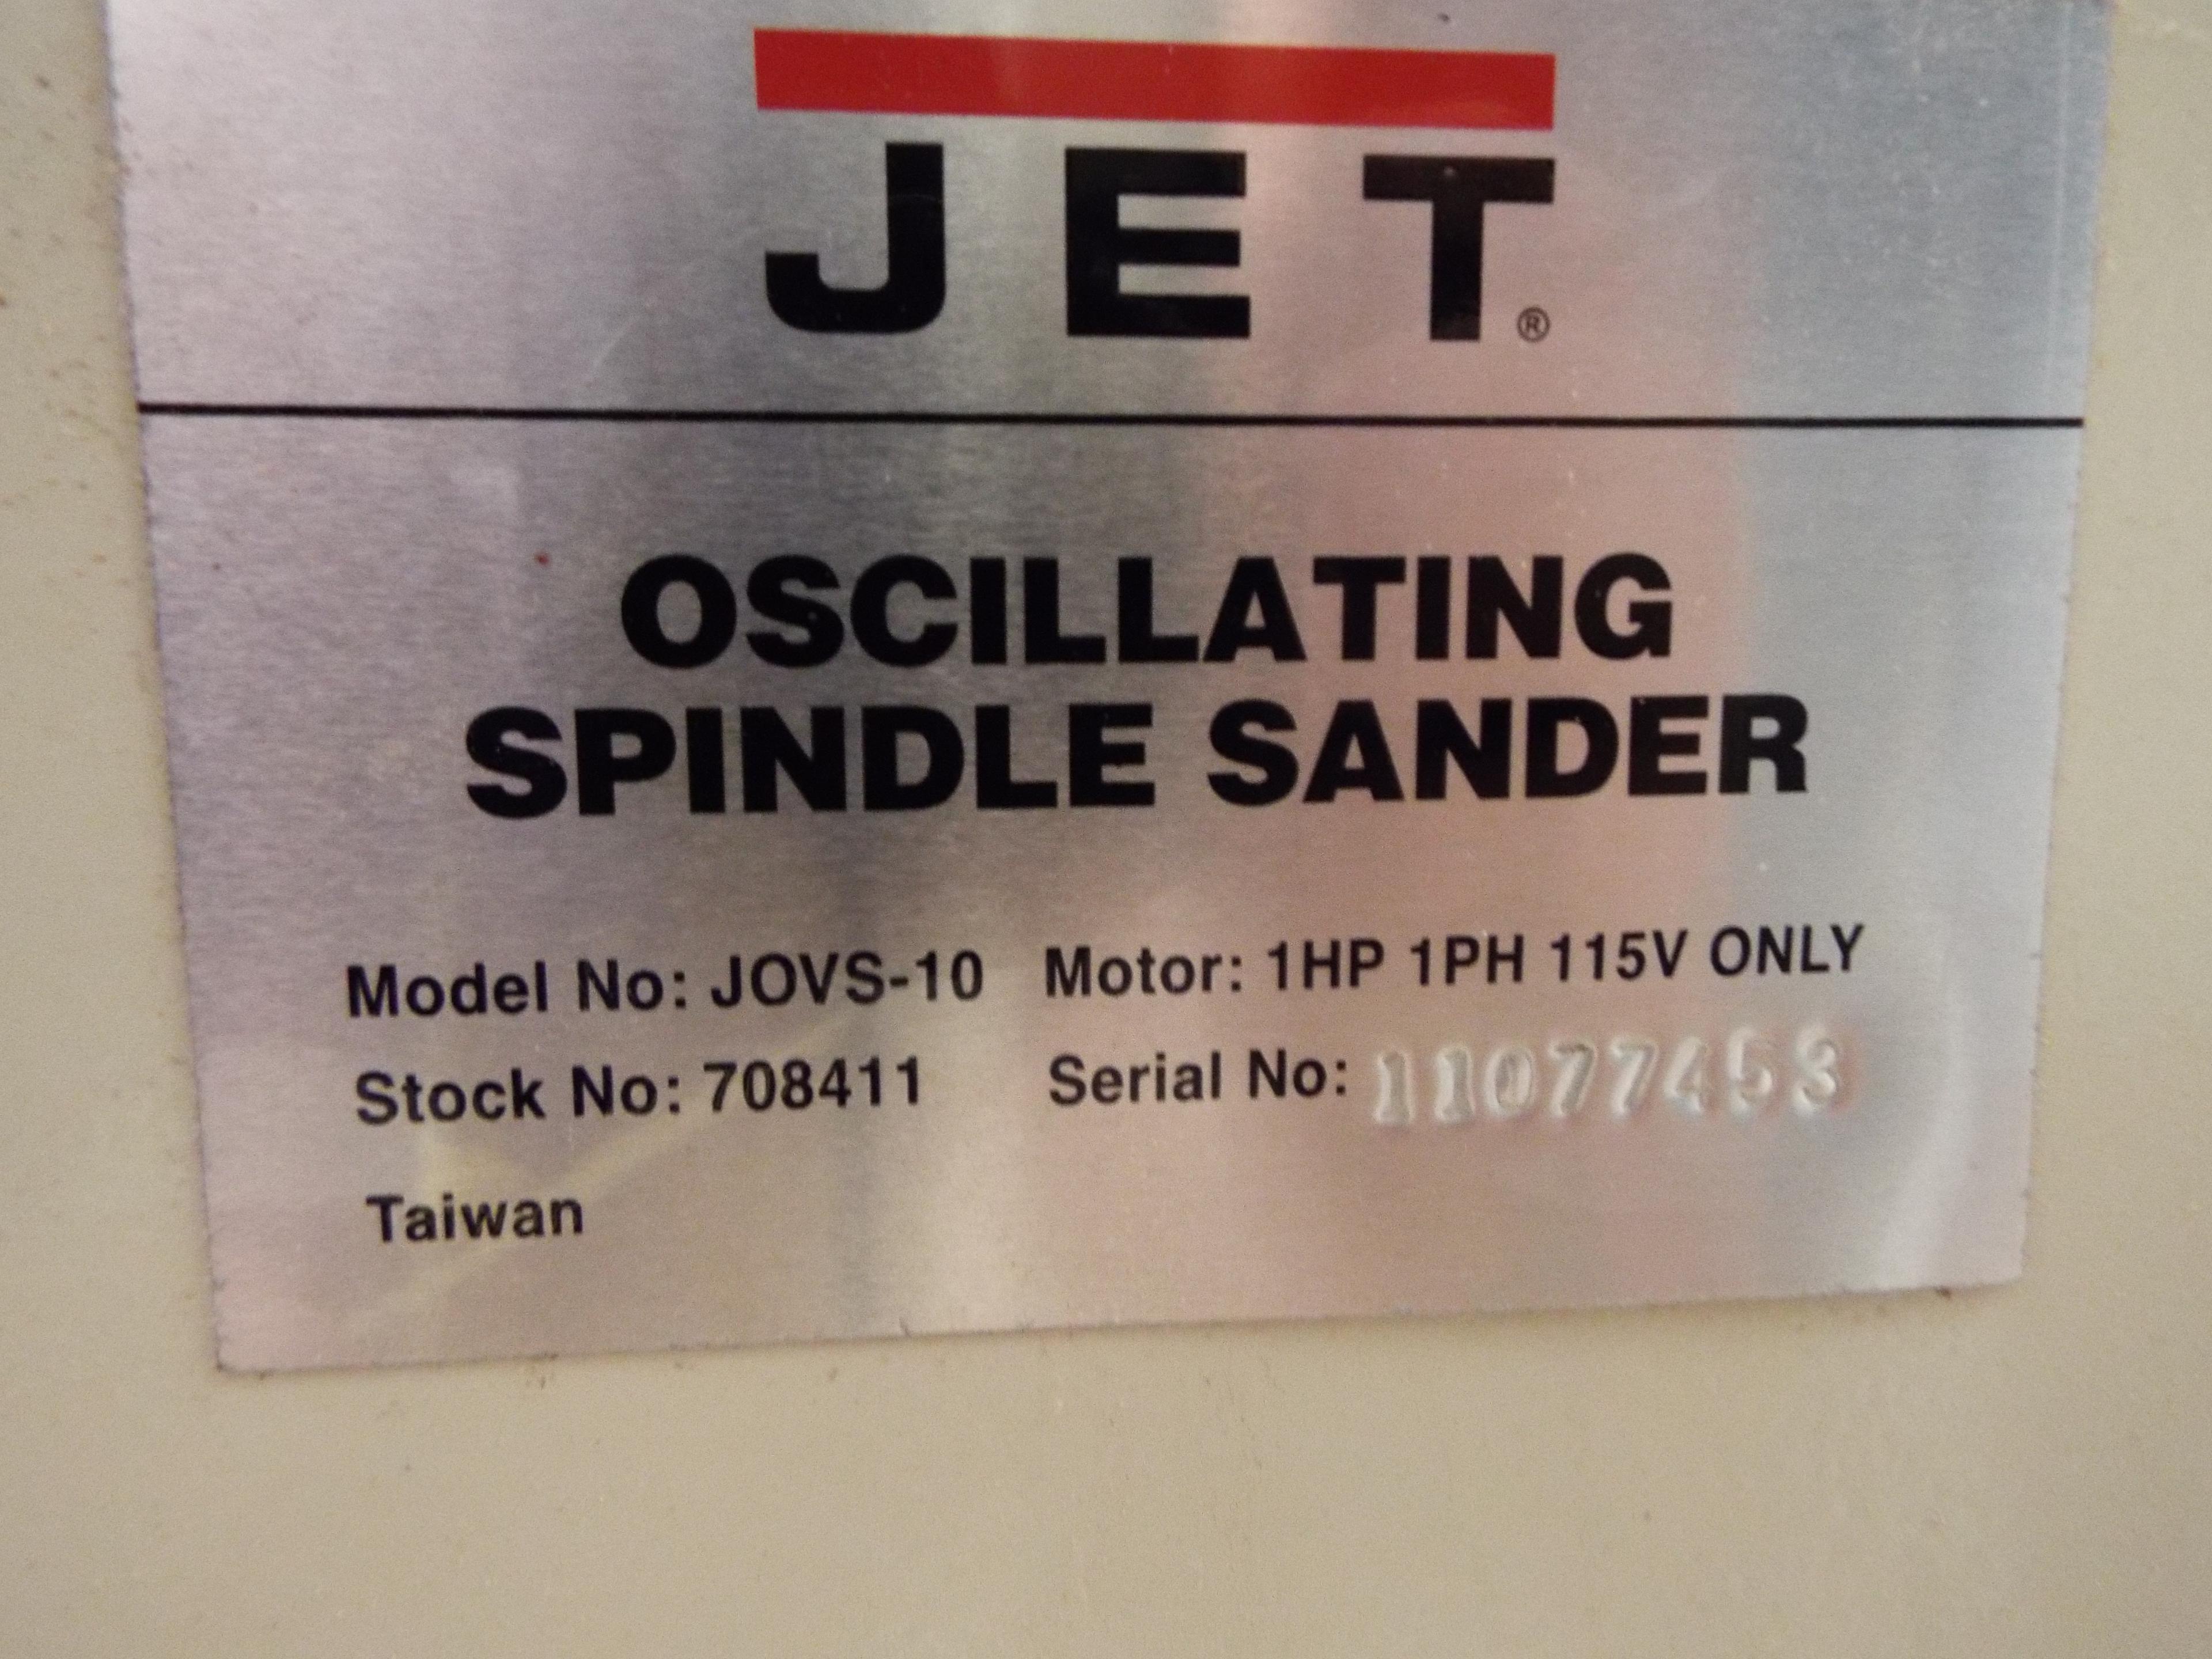 Jet Oscillating Spindle Sander